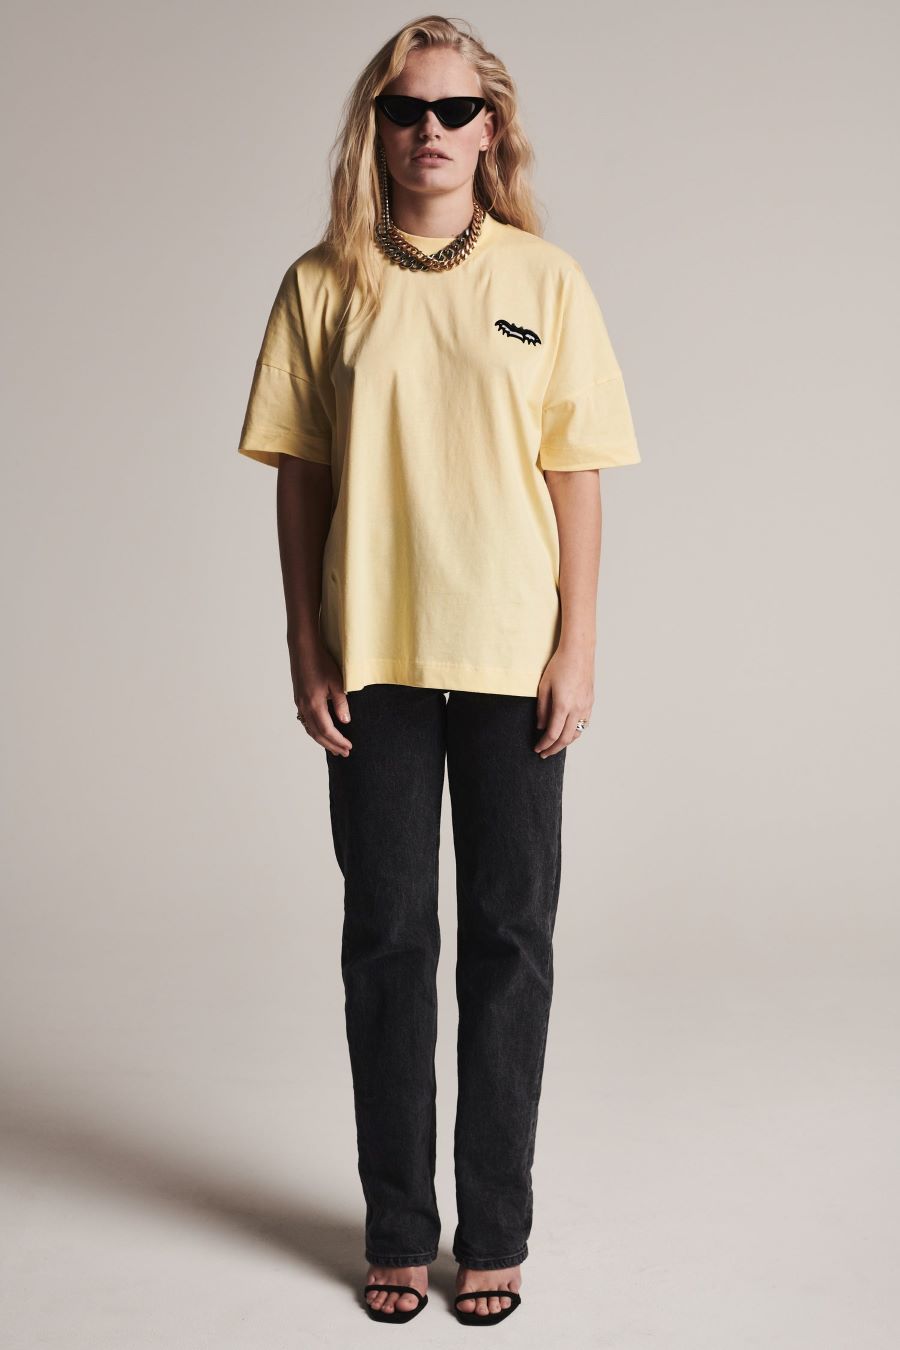 Destructief Ultieme Reproduceren Zoe Karssen Vintage fit t-shirt Yellow – Studione9en